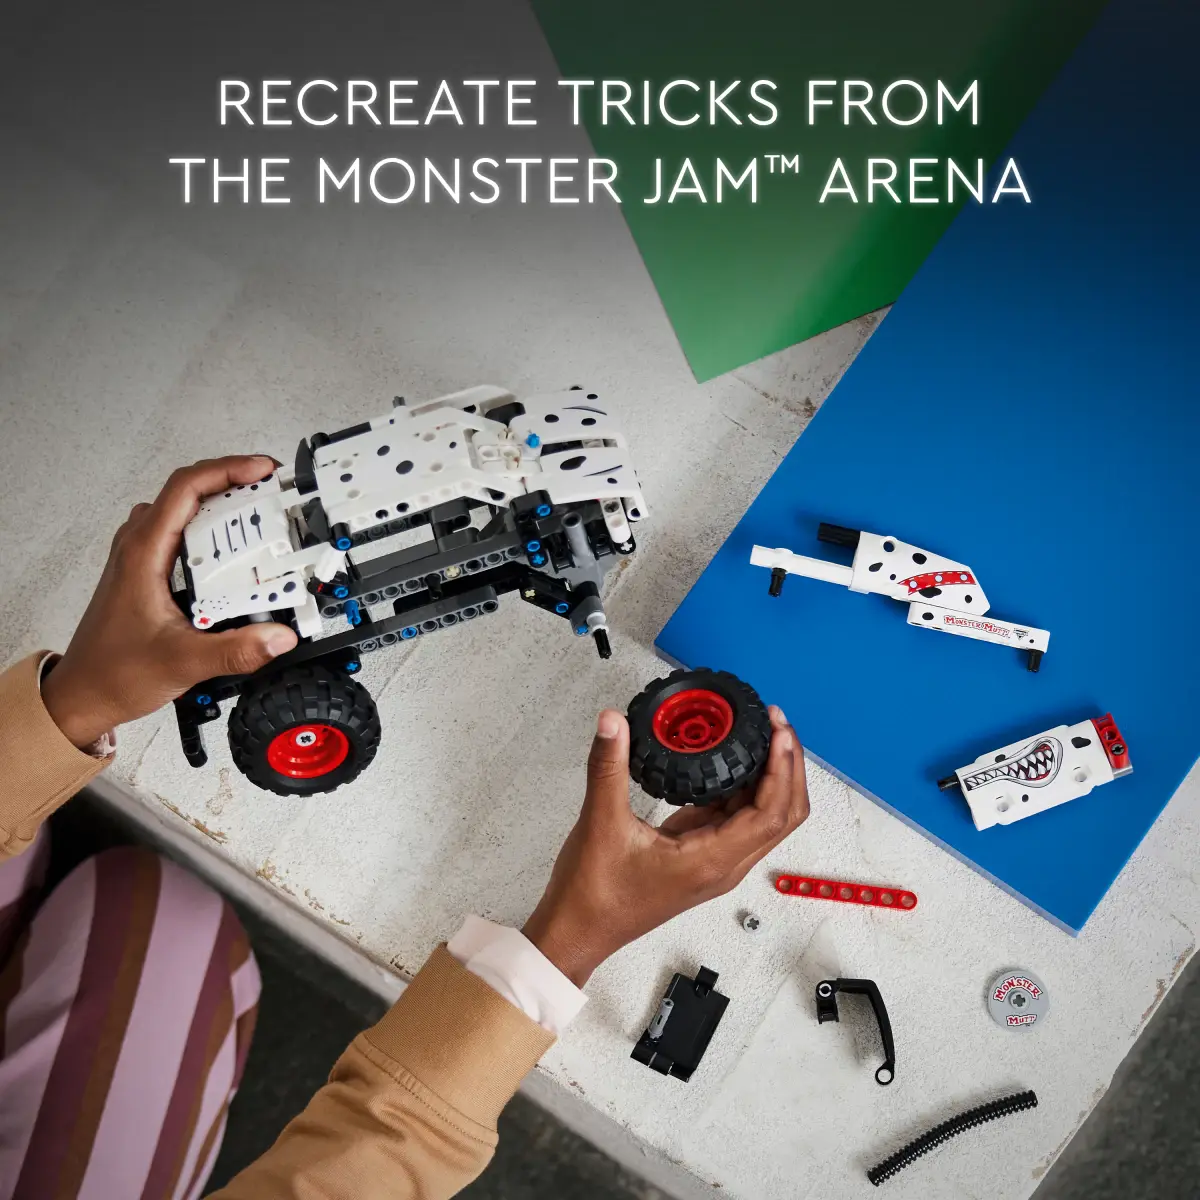 LEGO Technic Monster Jam Monster Mutt Dalmatian Building Toy Set, 244 Pcs, Multicolour, 7Y+